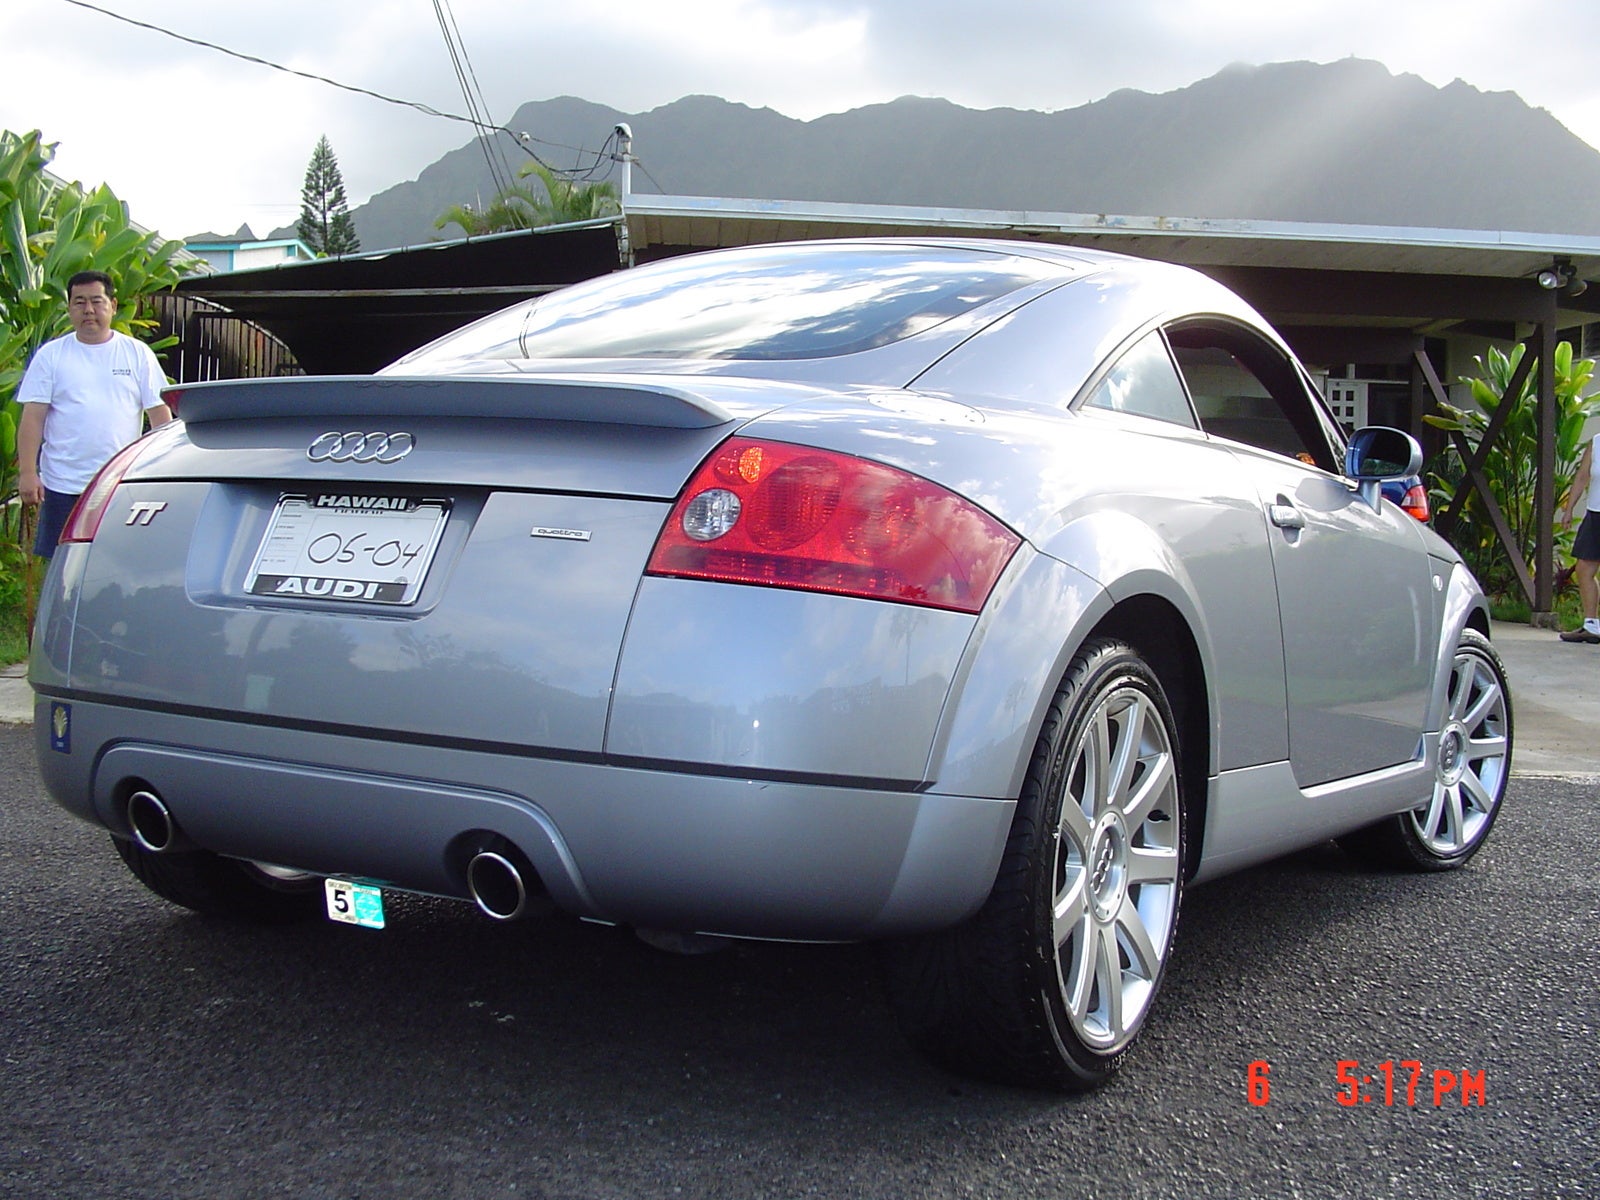 2002 Audi TT - Pictures - CarGurus